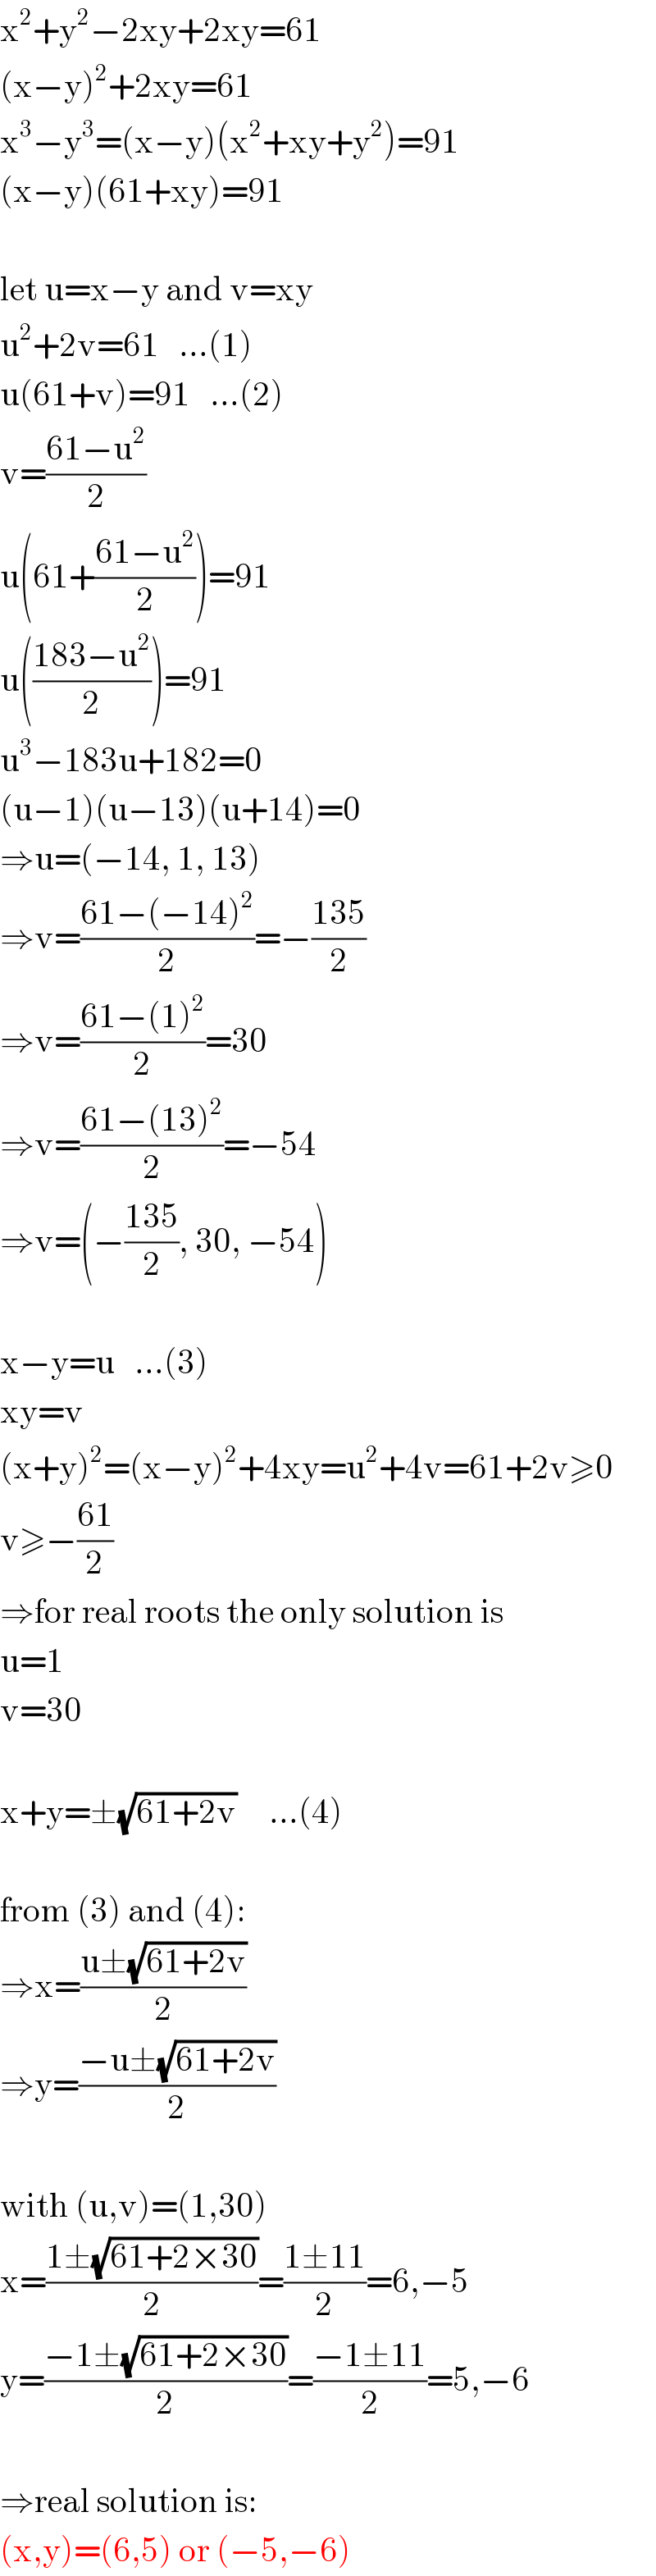 x^2 +y^2 −2xy+2xy=61  (x−y)^2 +2xy=61  x^3 −y^3 =(x−y)(x^2 +xy+y^2 )=91  (x−y)(61+xy)=91    let u=x−y and v=xy  u^2 +2v=61   ...(1)  u(61+v)=91   ...(2)  v=((61−u^2 )/2)  u(61+((61−u^2 )/2))=91  u(((183−u^2 )/2))=91  u^3 −183u+182=0  (u−1)(u−13)(u+14)=0  ⇒u=(−14, 1, 13)  ⇒v=((61−(−14)^2 )/2)=−((135)/2)  ⇒v=((61−(1)^2 )/2)=30  ⇒v=((61−(13)^2 )/2)=−54  ⇒v=(−((135)/2), 30, −54)    x−y=u   ...(3)  xy=v  (x+y)^2 =(x−y)^2 +4xy=u^2 +4v=61+2v≥0  v≥−((61)/2)  ⇒for real roots the only solution is   u=1  v=30    x+y=±(√(61+2v))     ...(4)    from (3) and (4):  ⇒x=((u±(√(61+2v)))/2)  ⇒y=((−u±(√(61+2v)))/2)    with (u,v)=(1,30)  x=((1±(√(61+2×30)))/2)=((1±11)/2)=6,−5  y=((−1±(√(61+2×30)))/2)=((−1±11)/2)=5,−6    ⇒real solution is:  (x,y)=(6,5) or (−5,−6)  